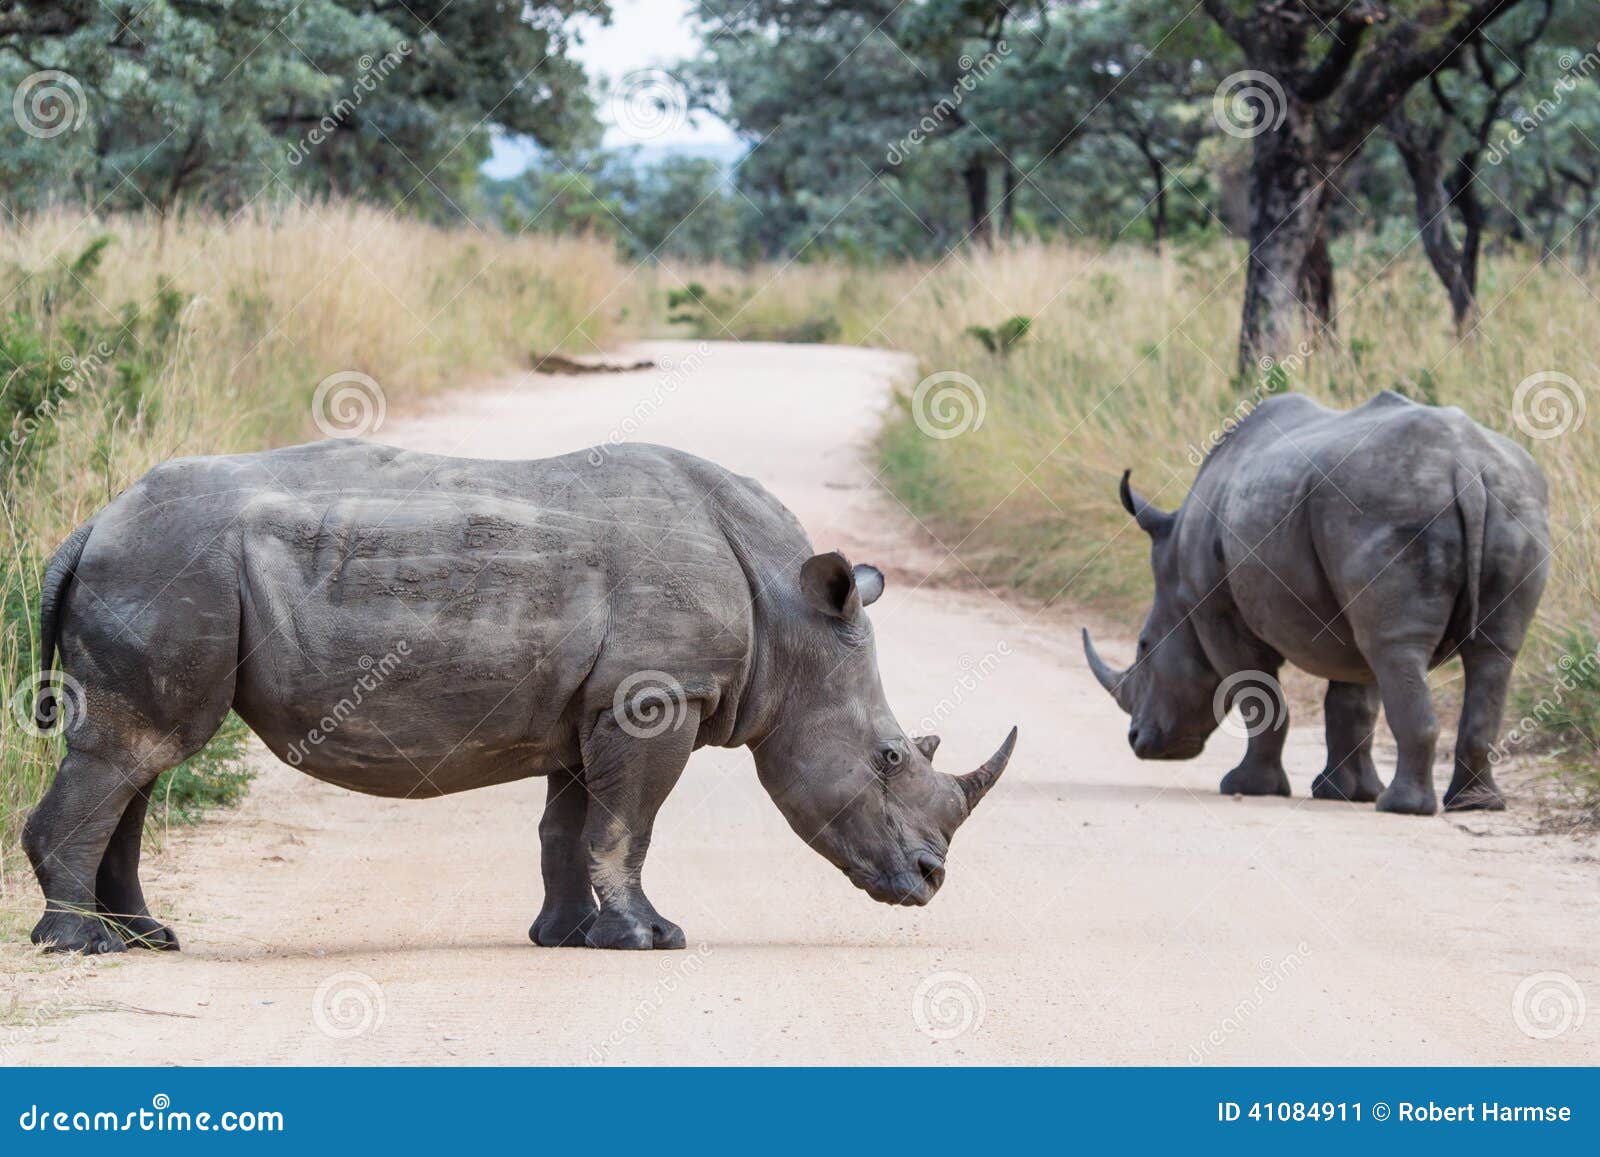 rhino roadblock